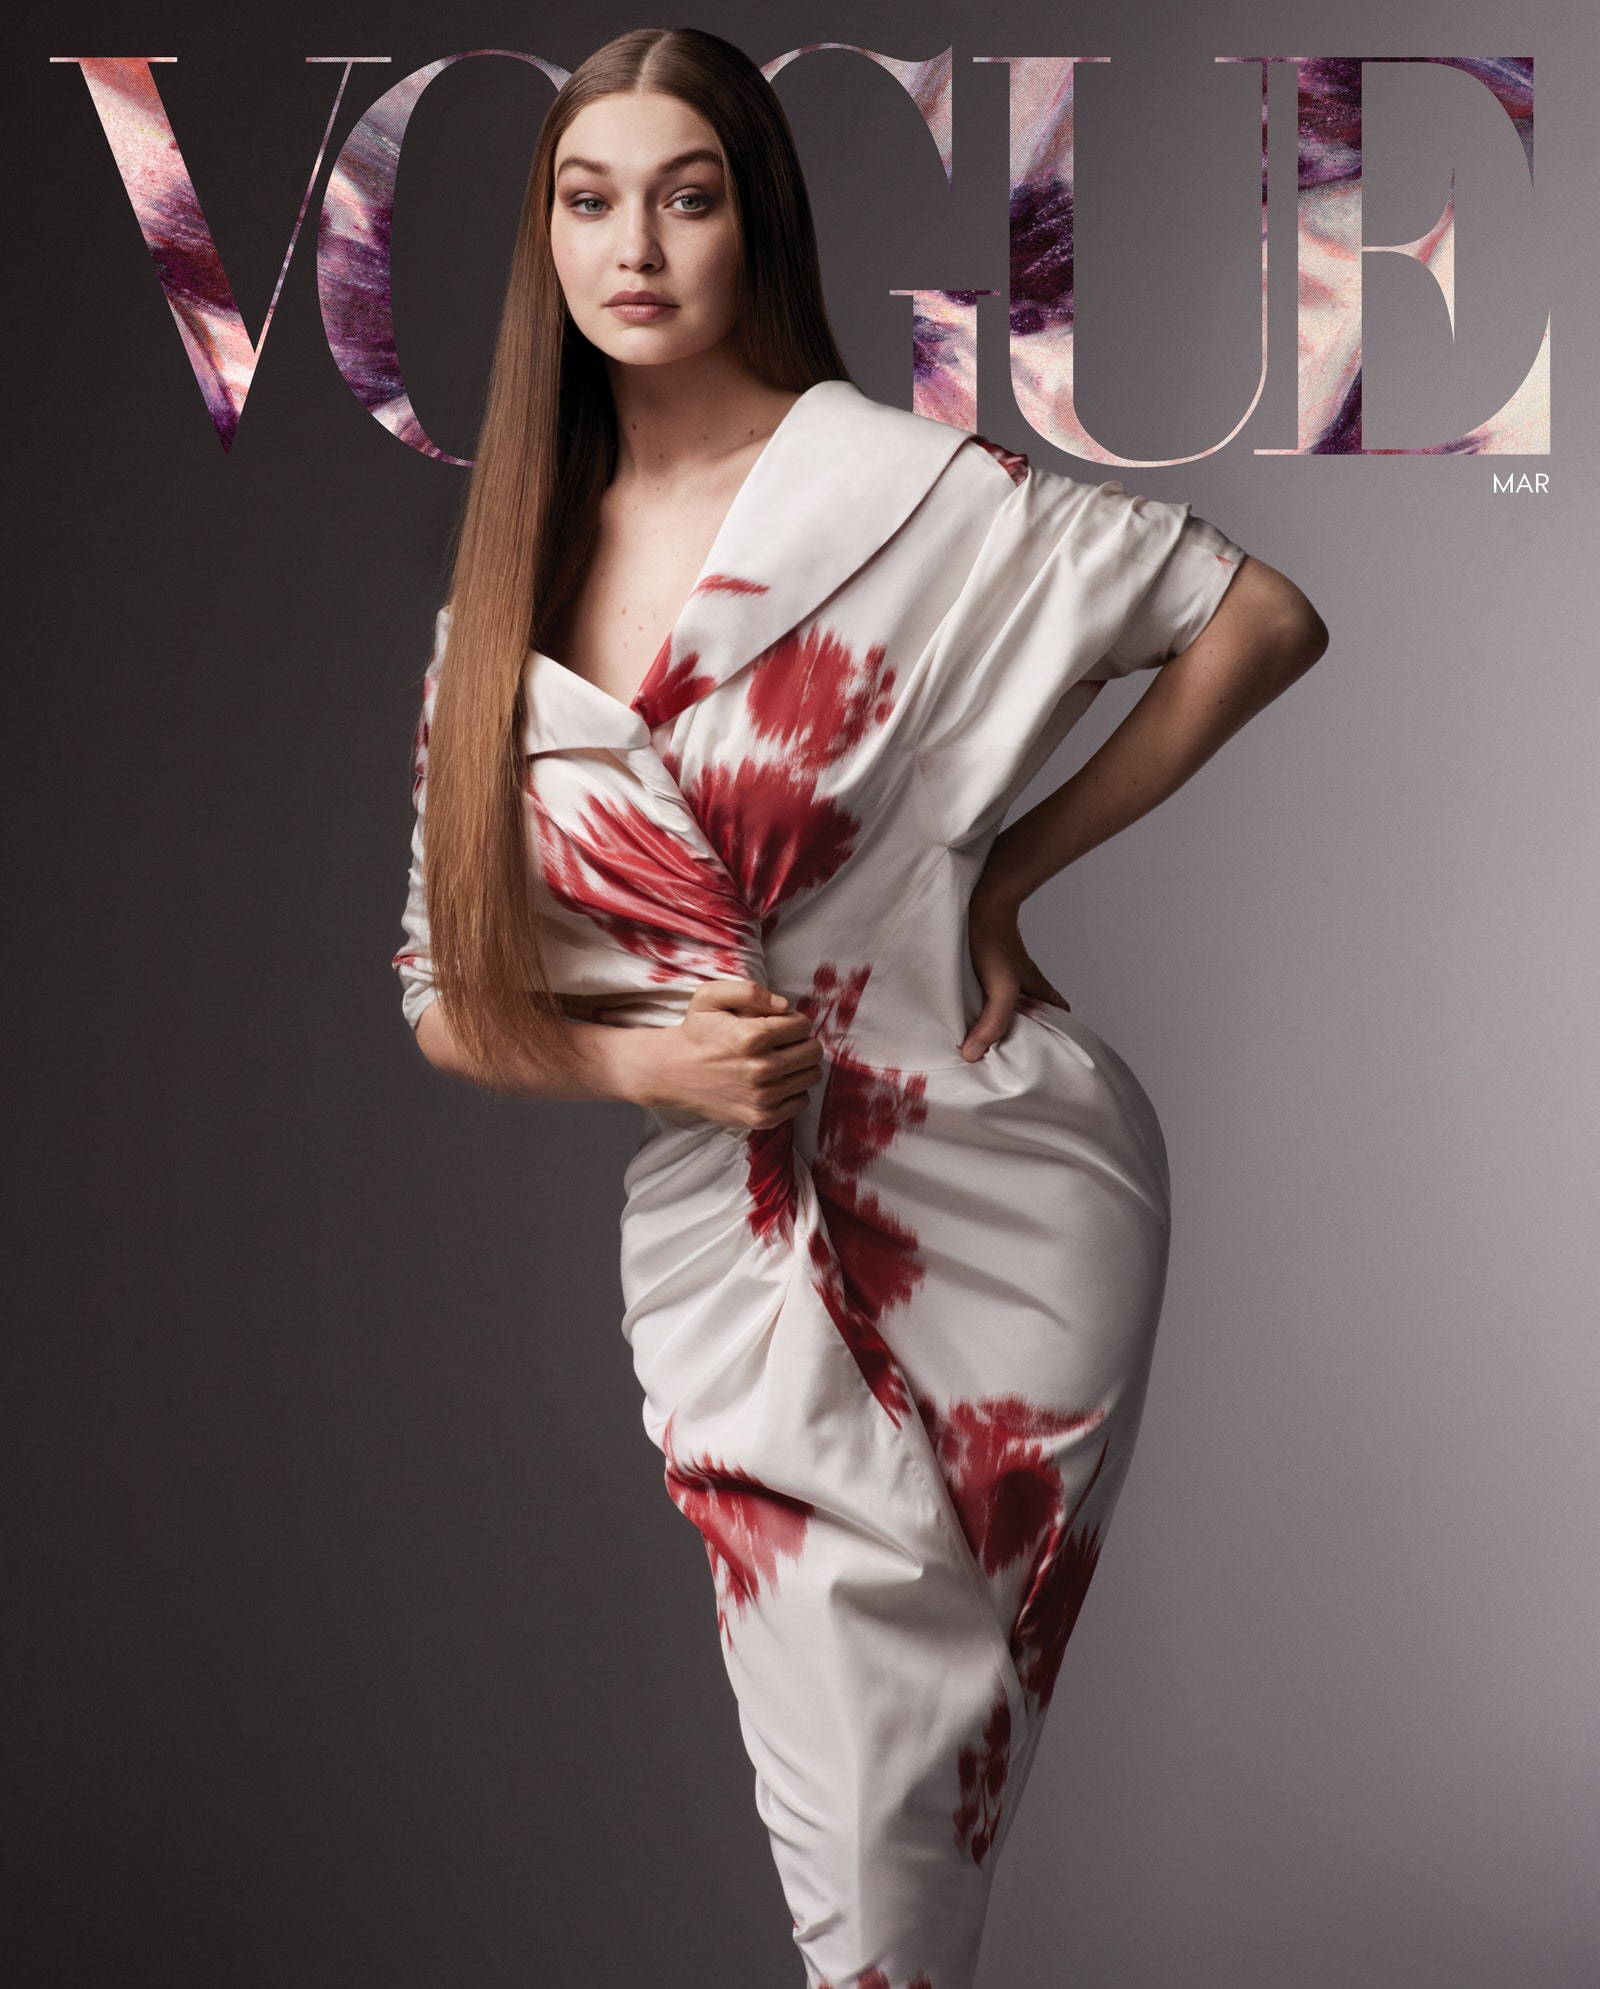 Tháng 2 năm nay, nàng It girl diện đồ Prada xuất hiện trên bìa tạp chí Vogue Mỹ kể về những trải nghiệm lần đầu làm mẹ